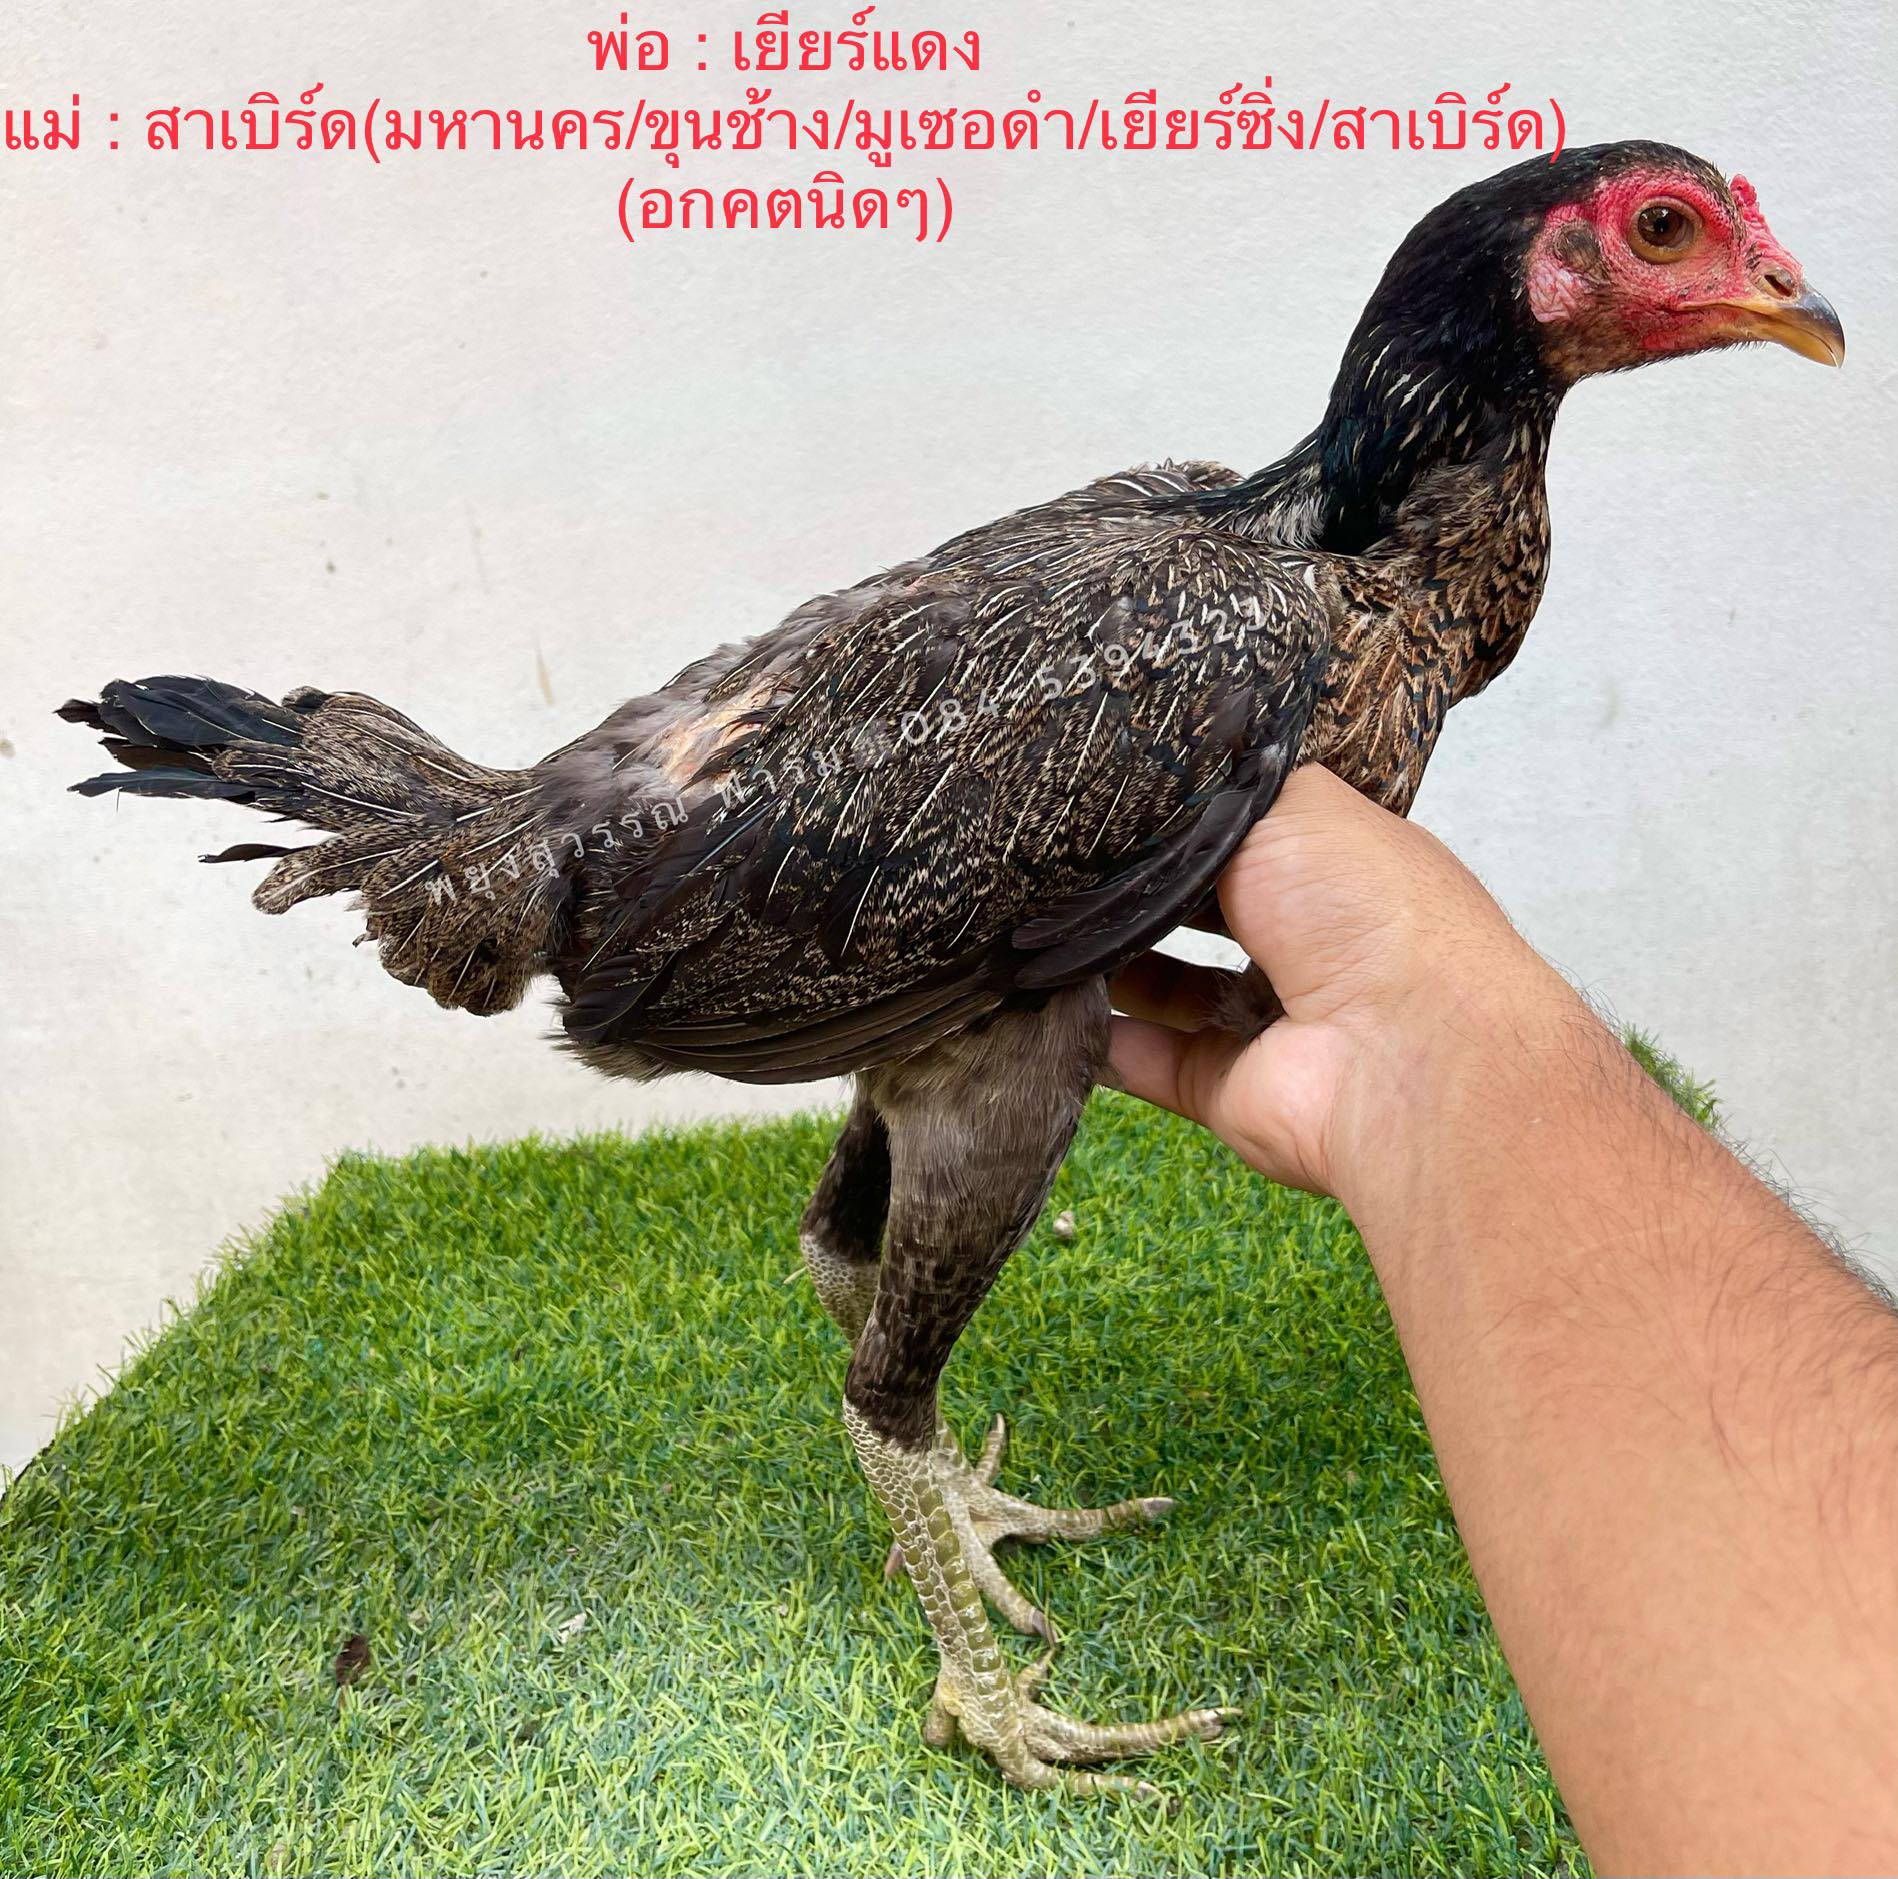 ไก่สาวพม่าม้าล่อสายเลือดดี ราคา 500 บาท พร้อมไข่